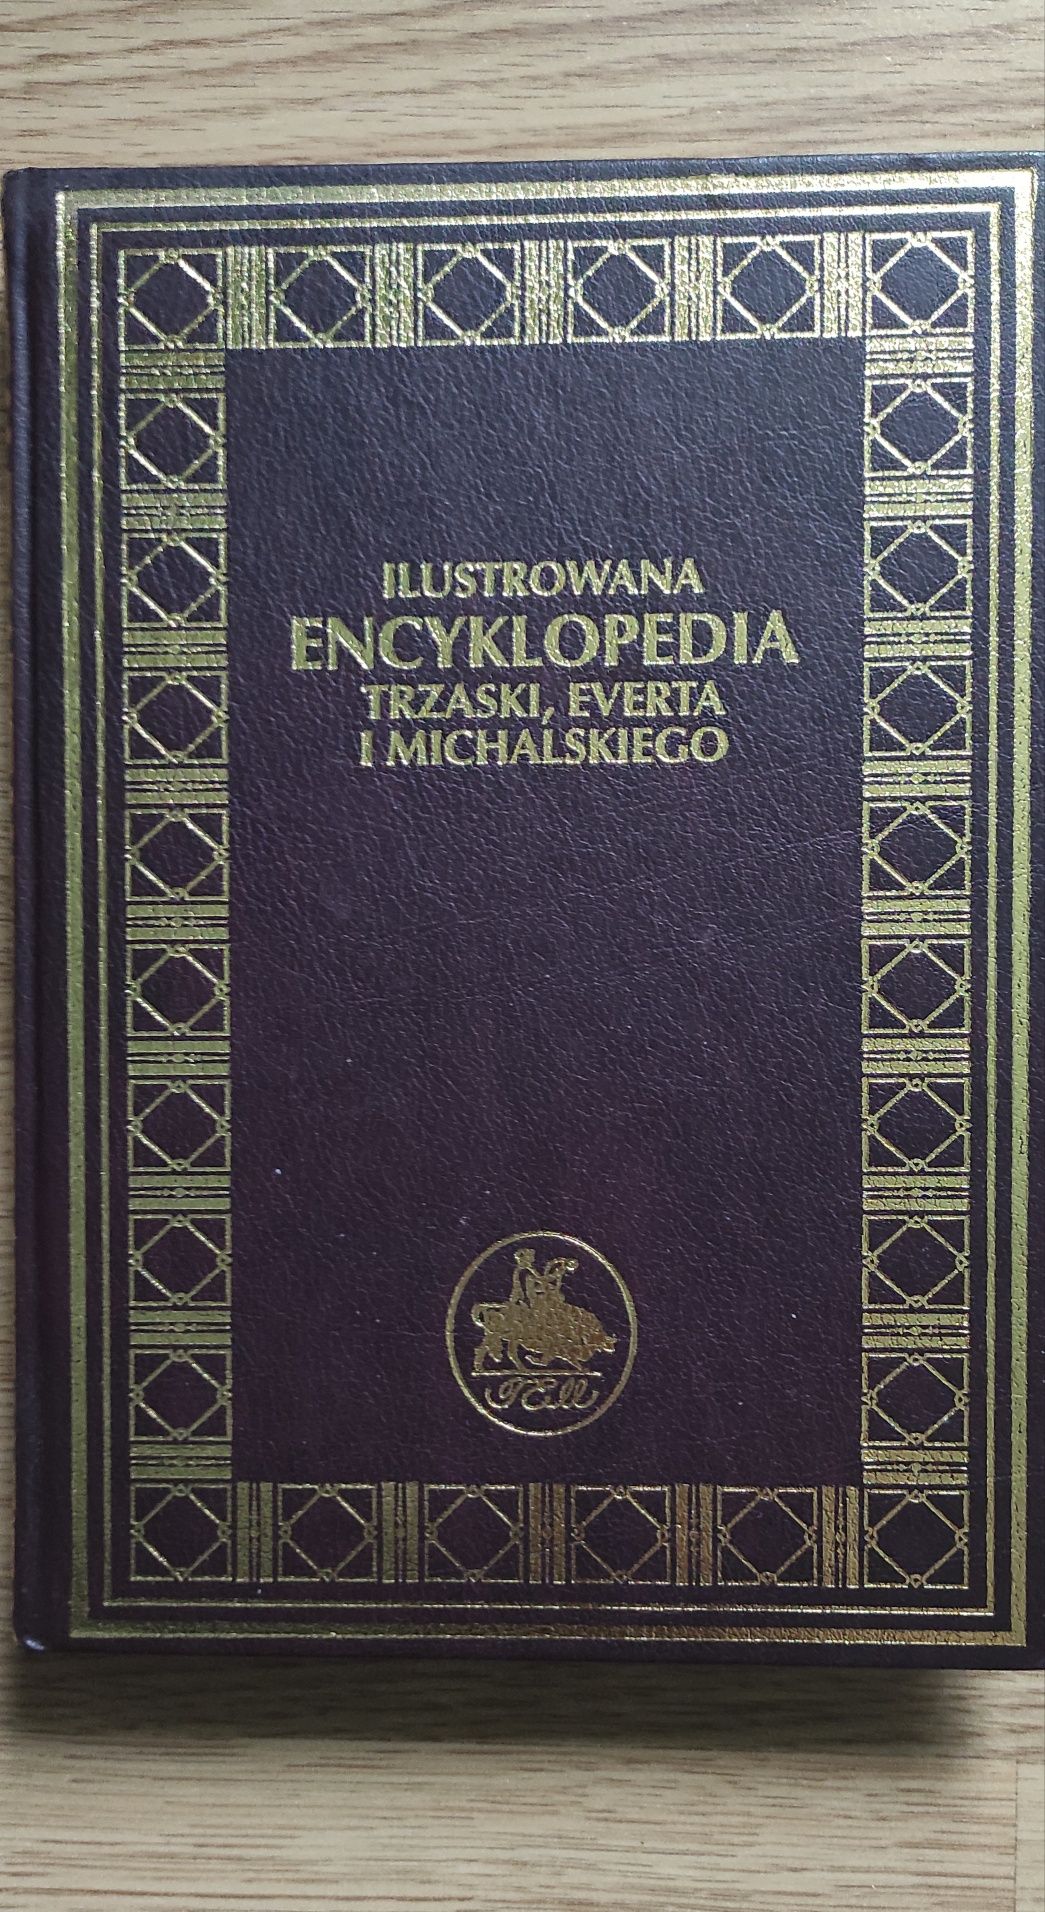 Ilustrowana Encyklopedia Trzaski Everta i Michalskiego